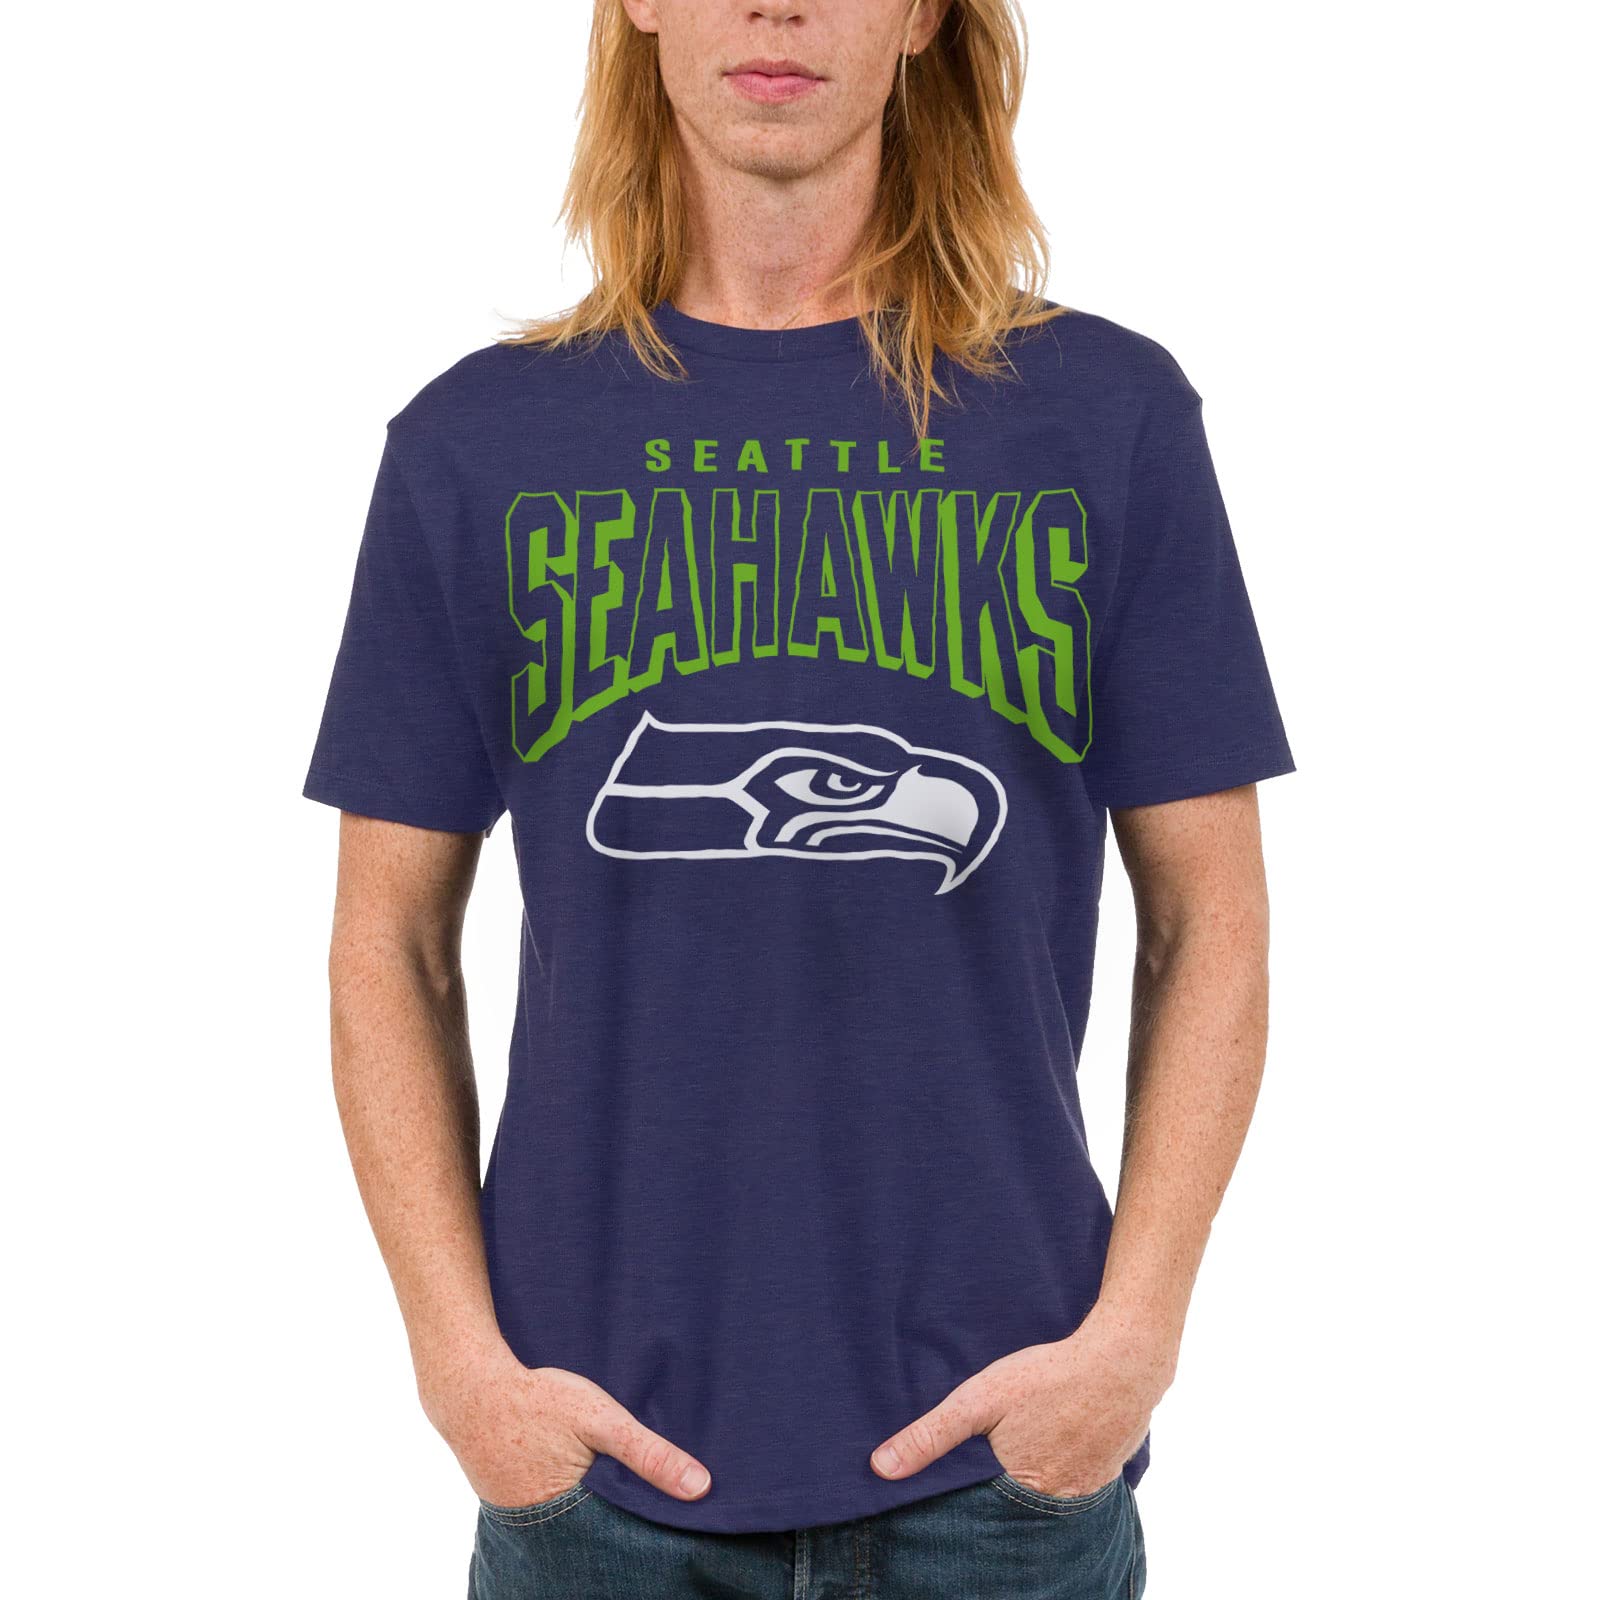 seahawks fan store